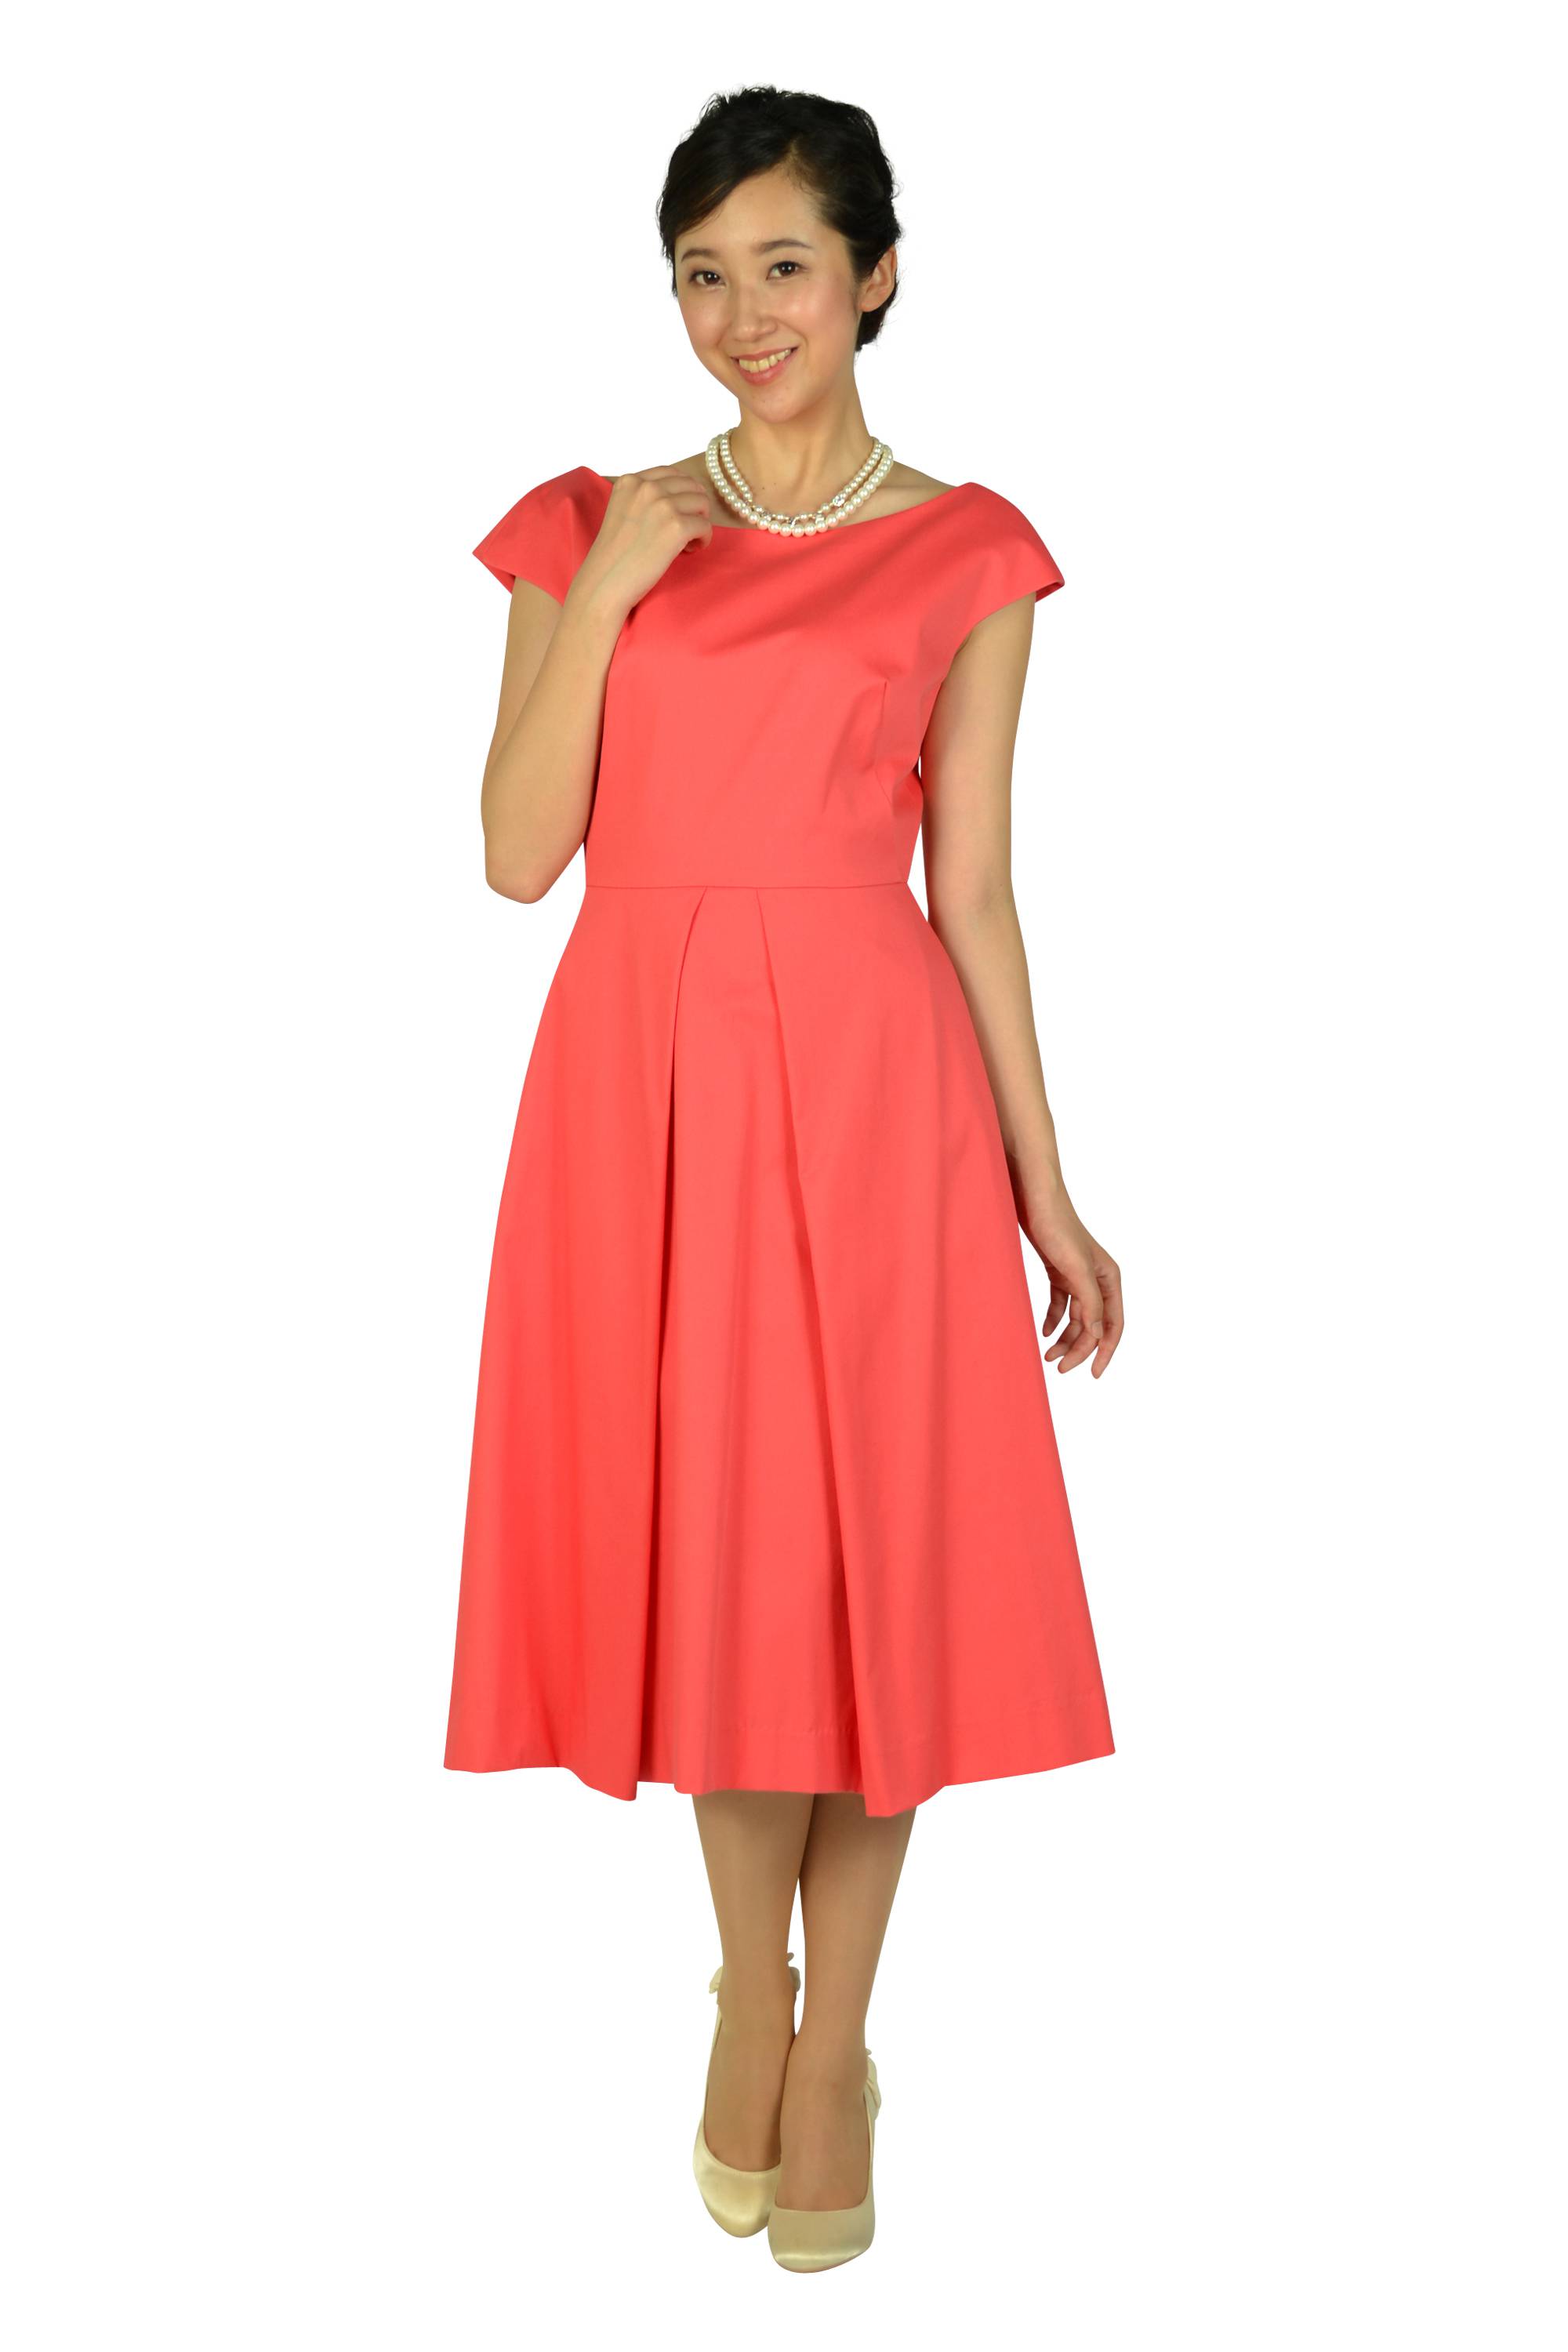 Milly バックワイドデザインオレンジピンクドレス